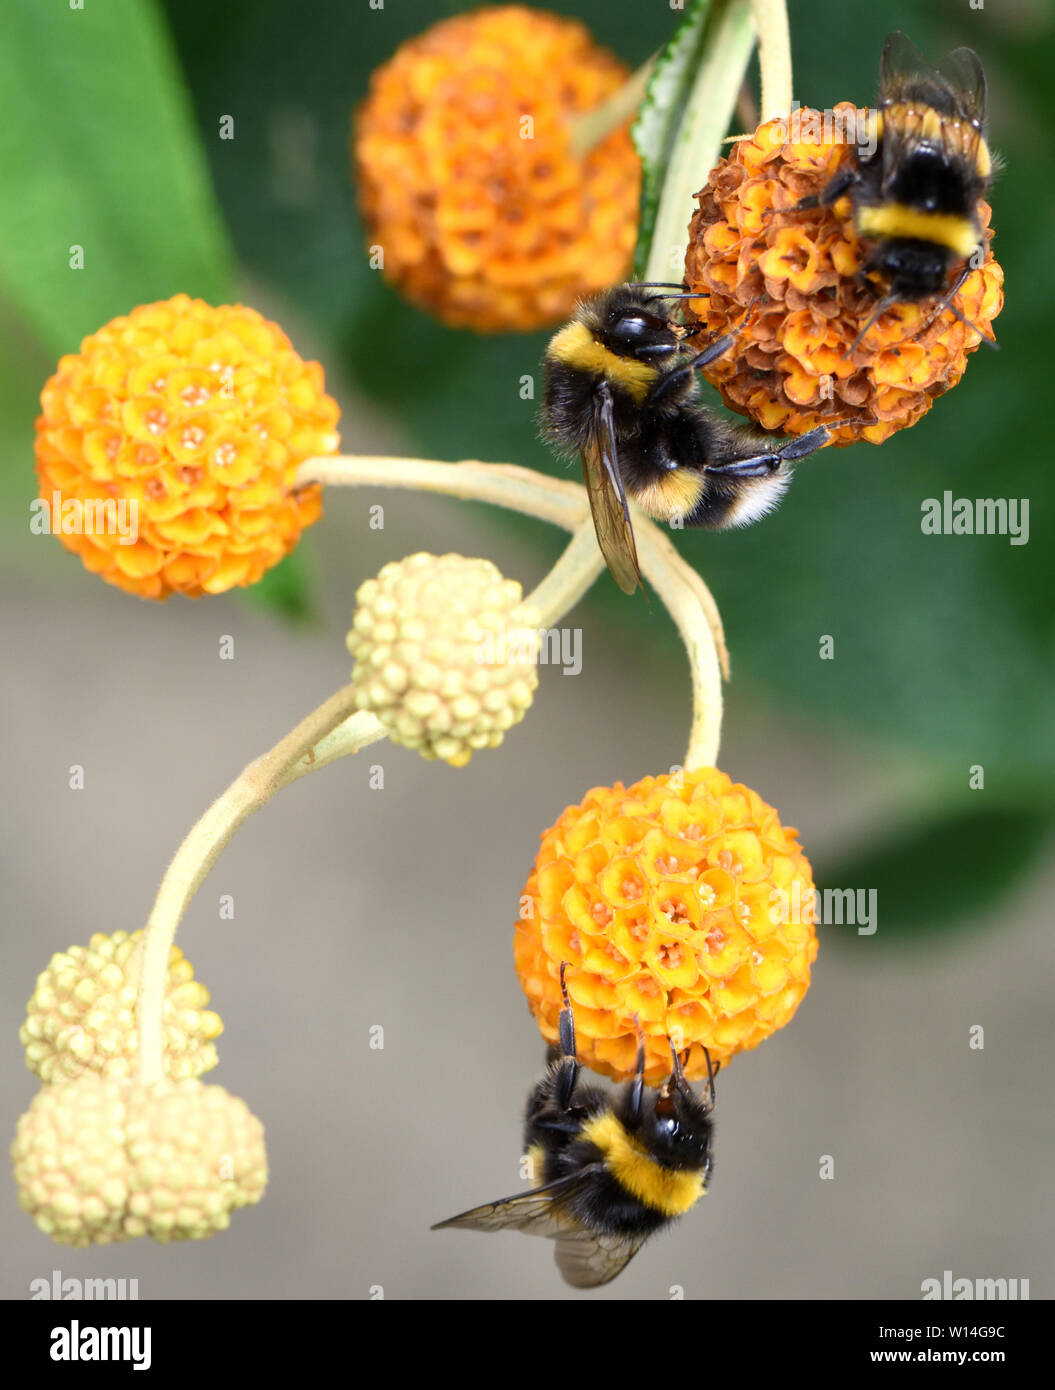 Arbeitnehmer buff-tailed Hummeln (Bombus terrestris) nutzen Sie die Lieferung von Nektar in die Blüten der Orange ball Baum (buddleja Nana). Bed Stockfoto